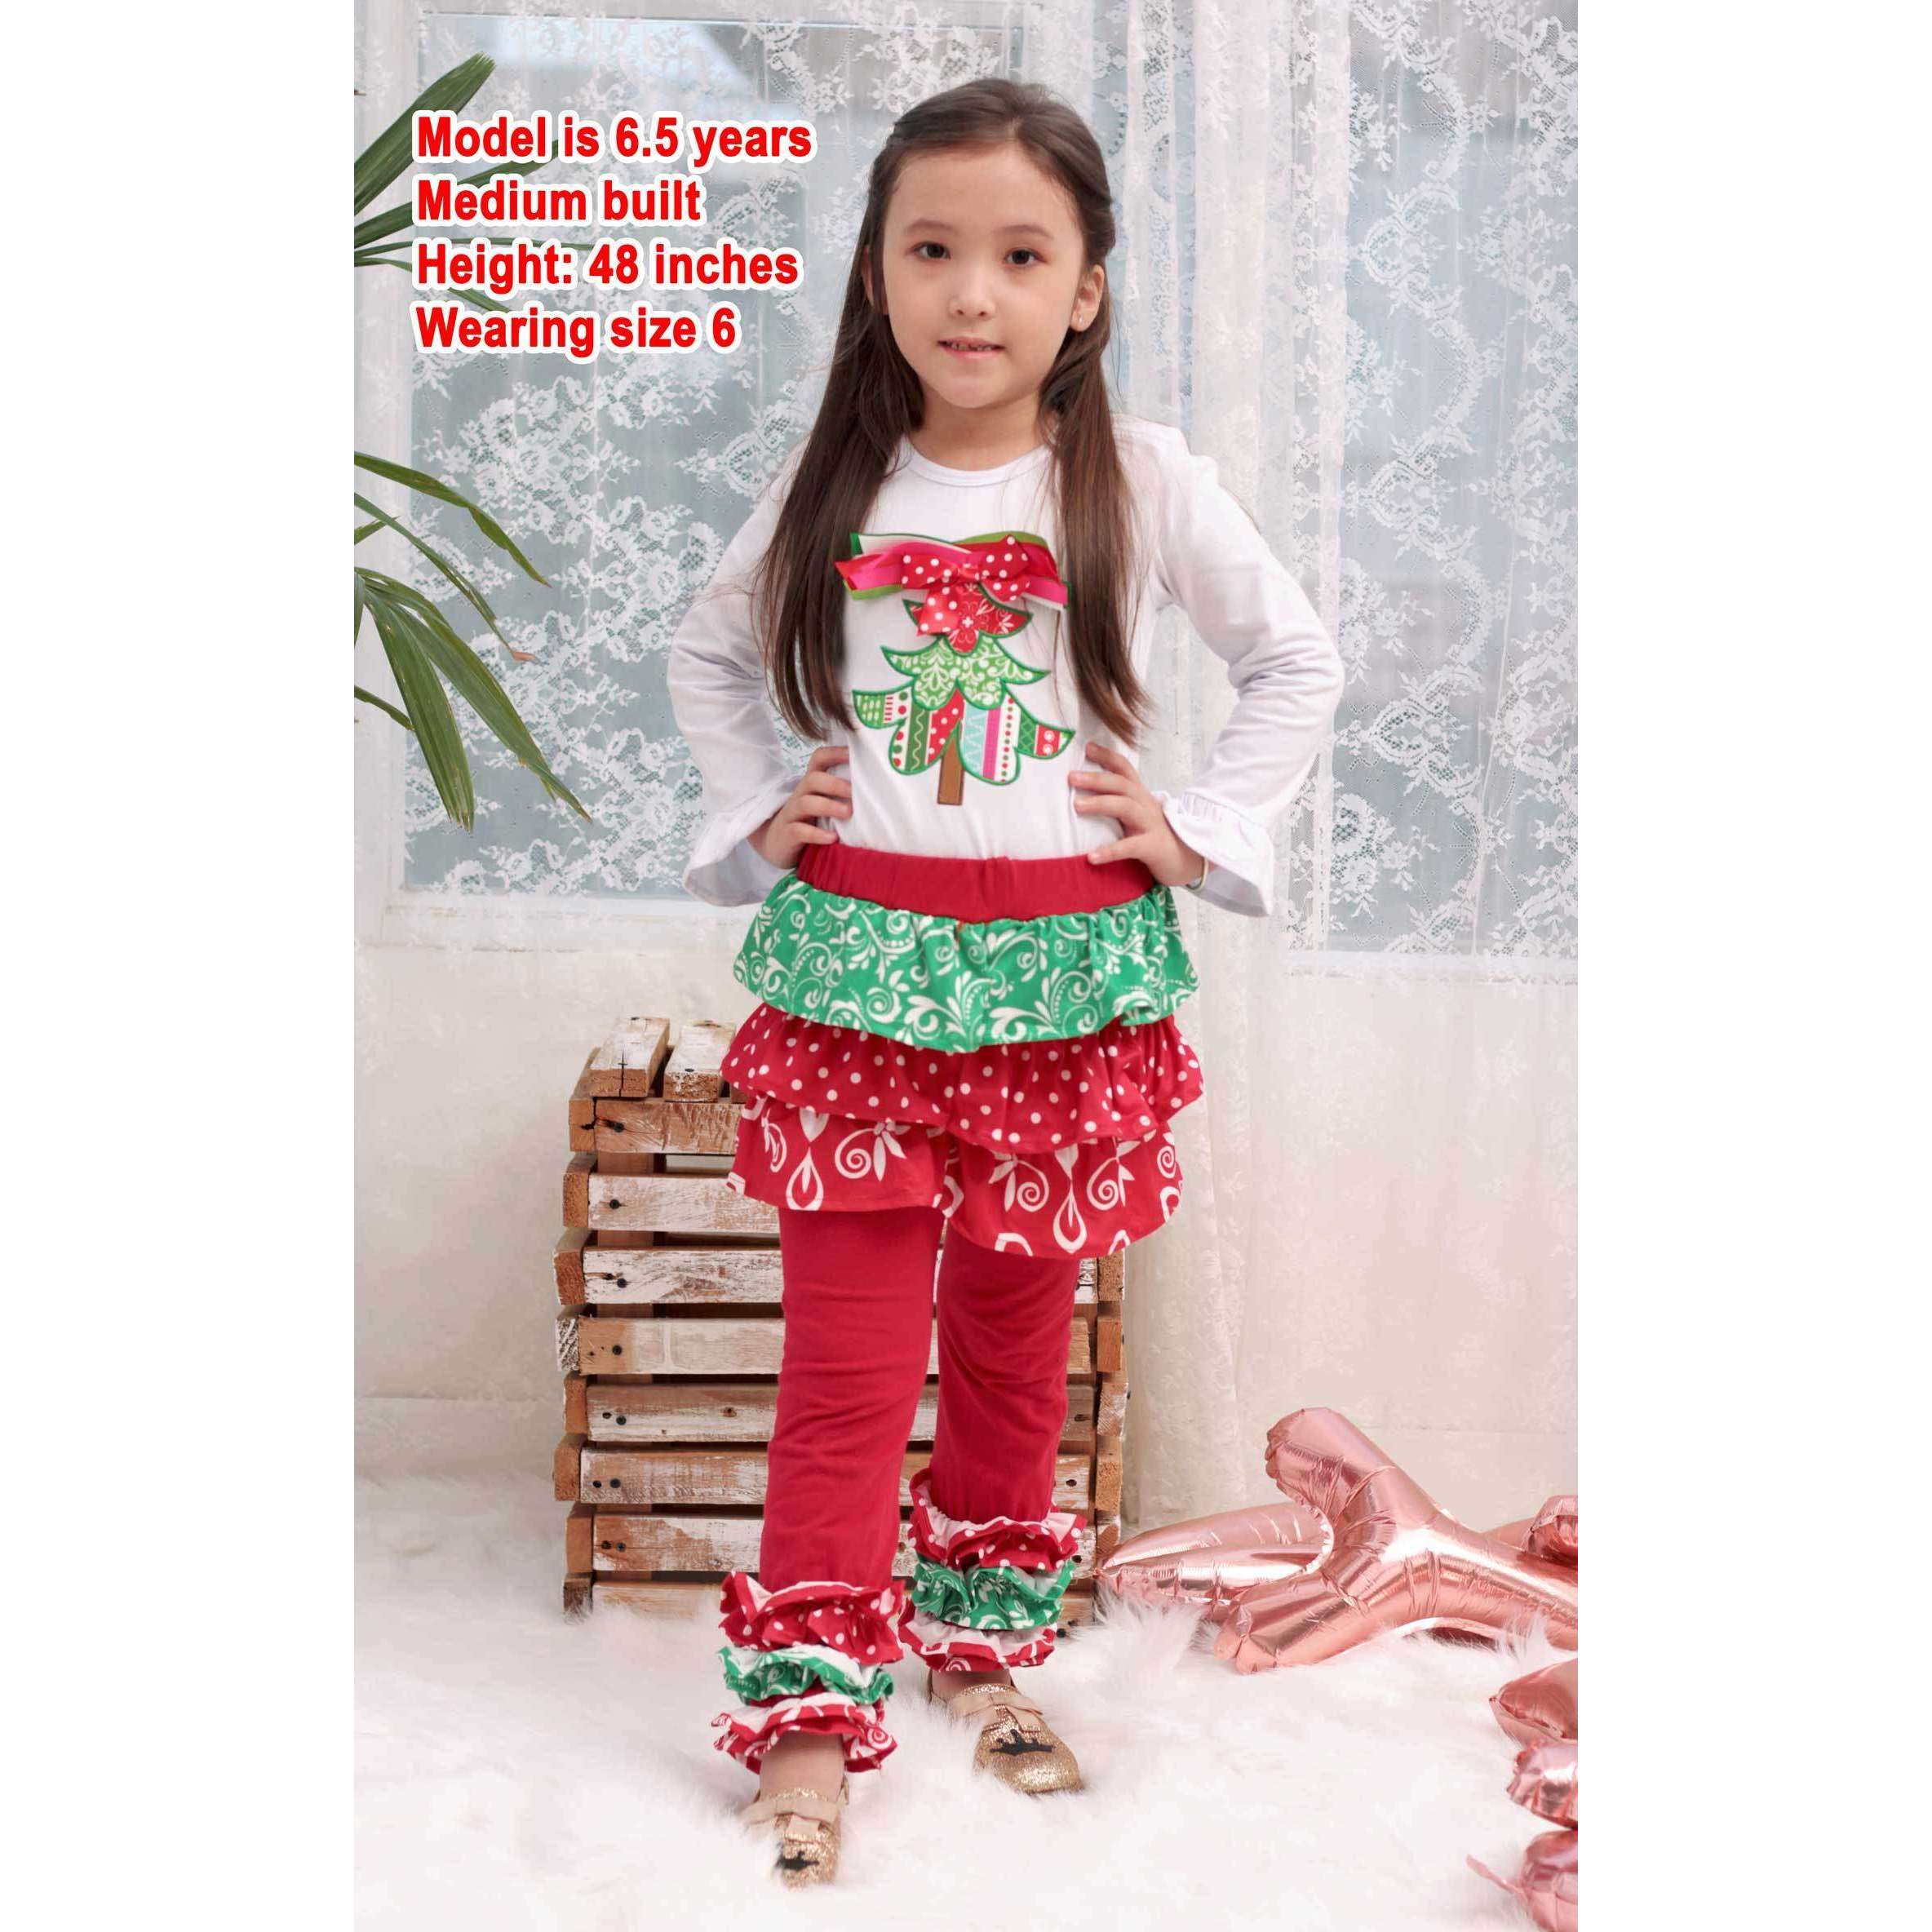 Angeline Kids:Baby Toddler Little Girls Christmas Tree Ruffles Skirt Set - Red White